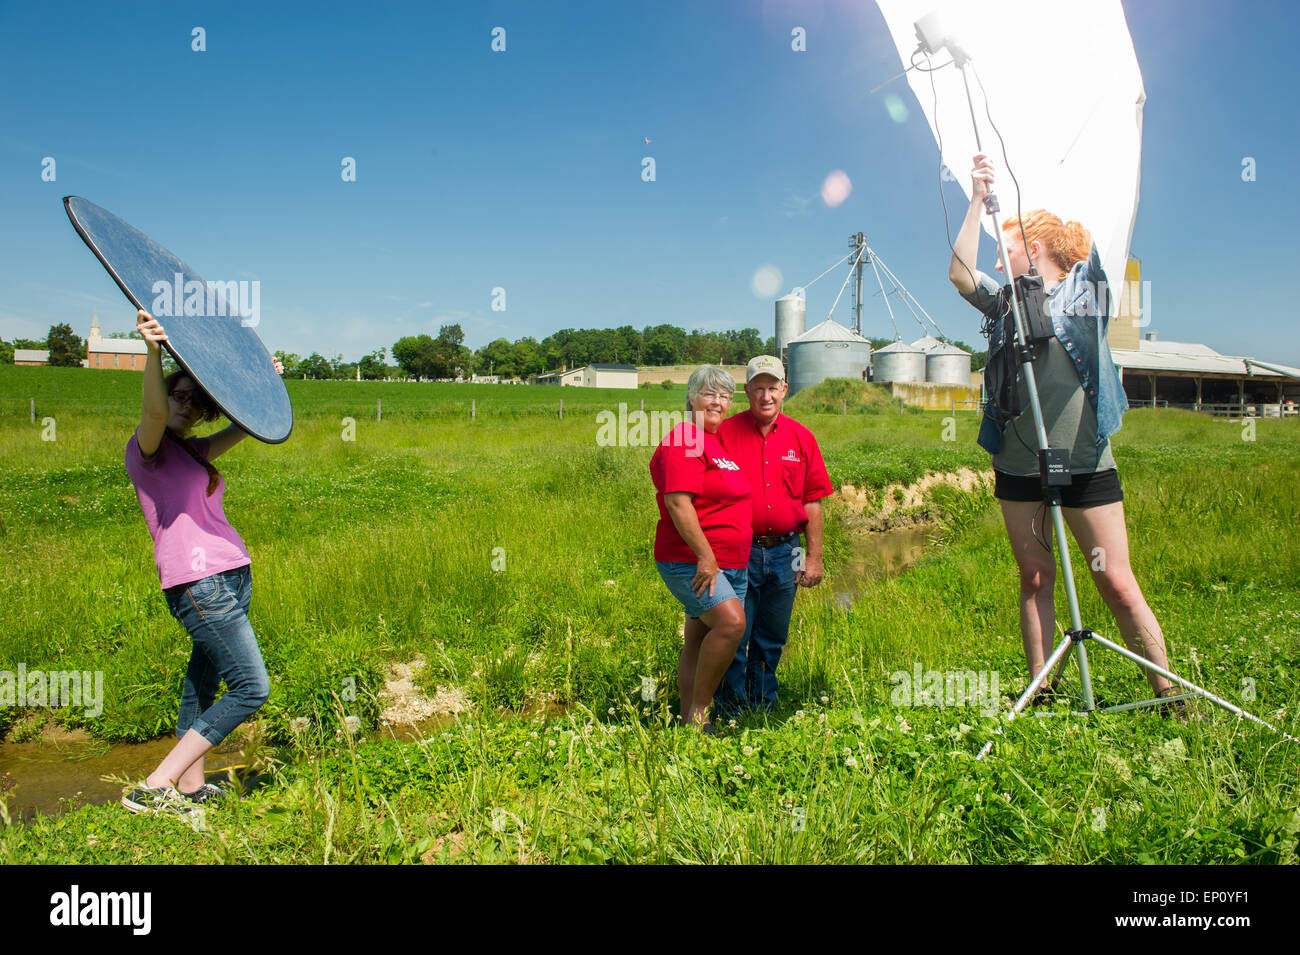 Fotografen aufstellen Ausrüstung außerhalb Foto Soja Bohnen Bauern in Mt. Airy, Maryland, USA Stockfoto